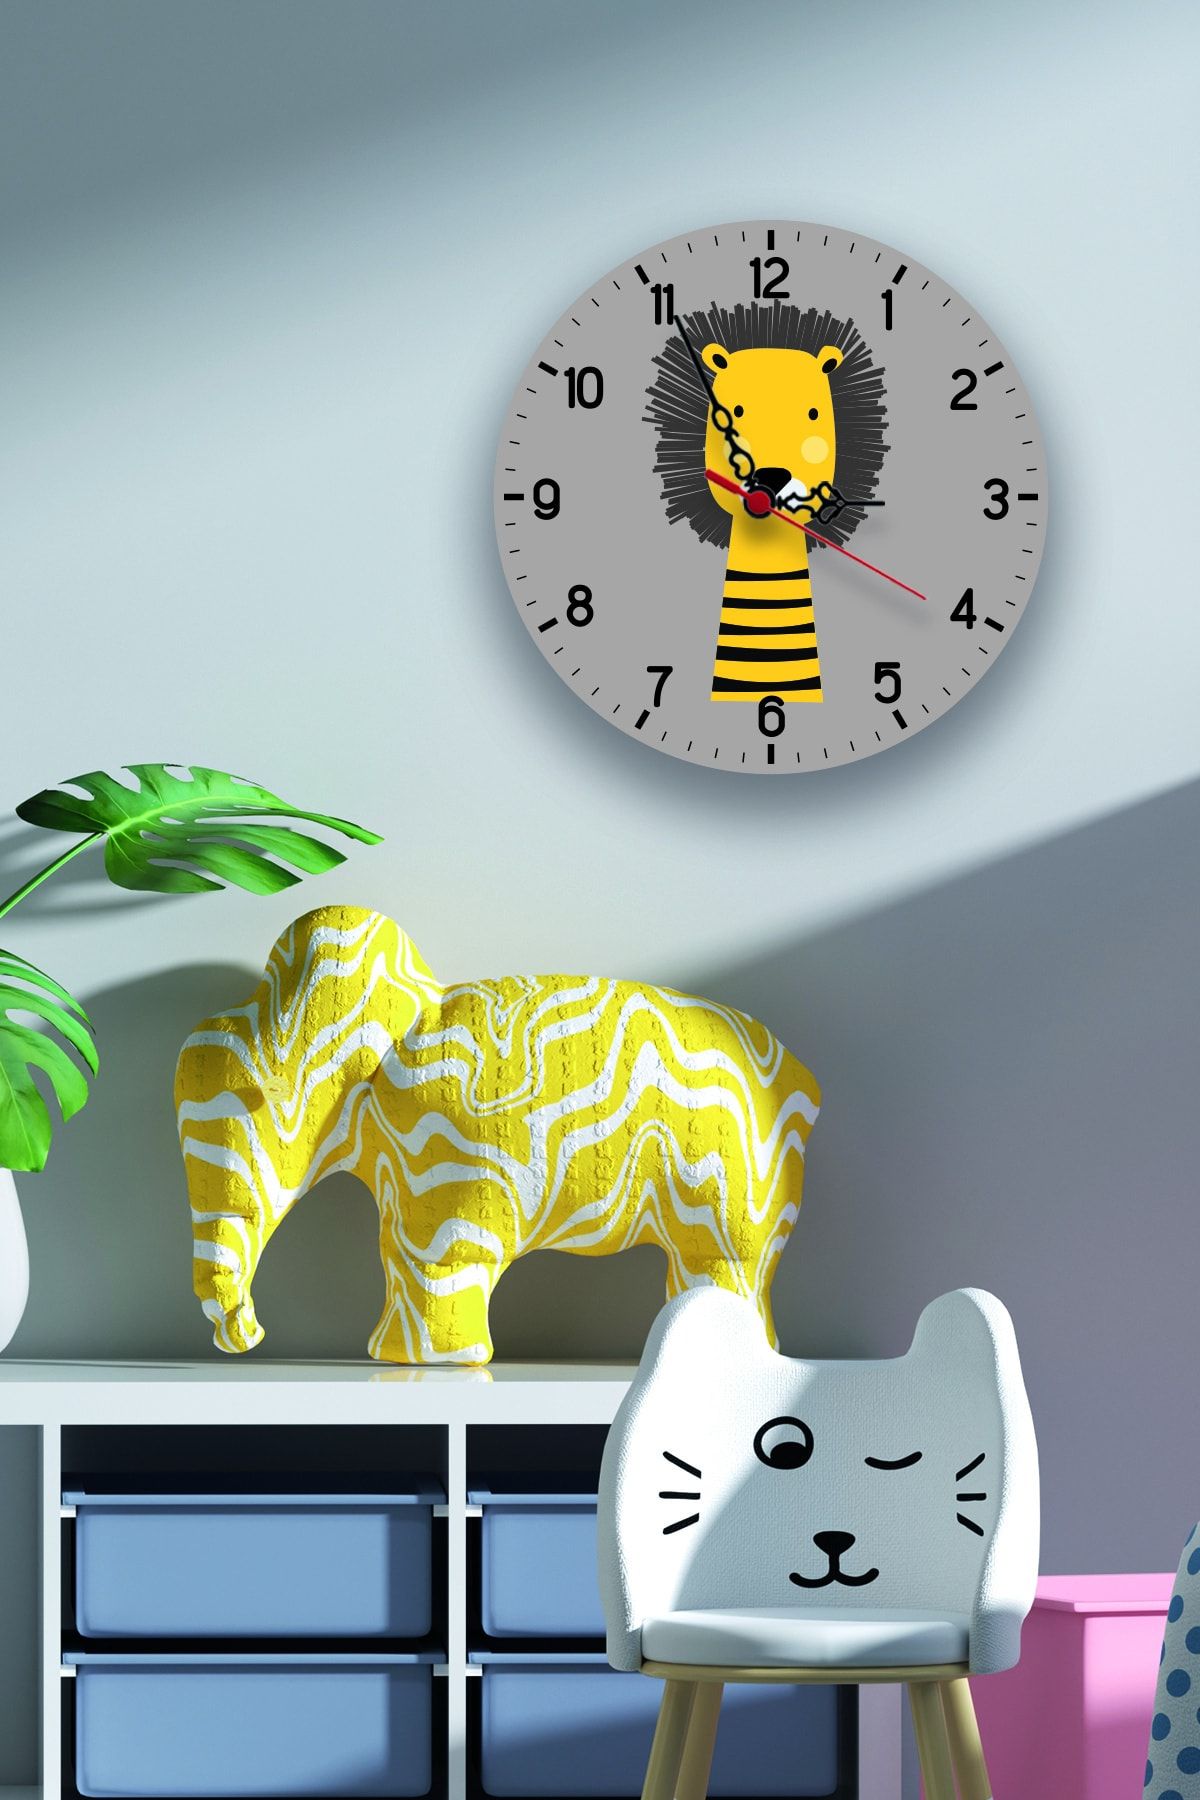 instababyrooms Çocuk Odası Dijital Baskılı Sessiz Akar Duvar Saati Model 0120